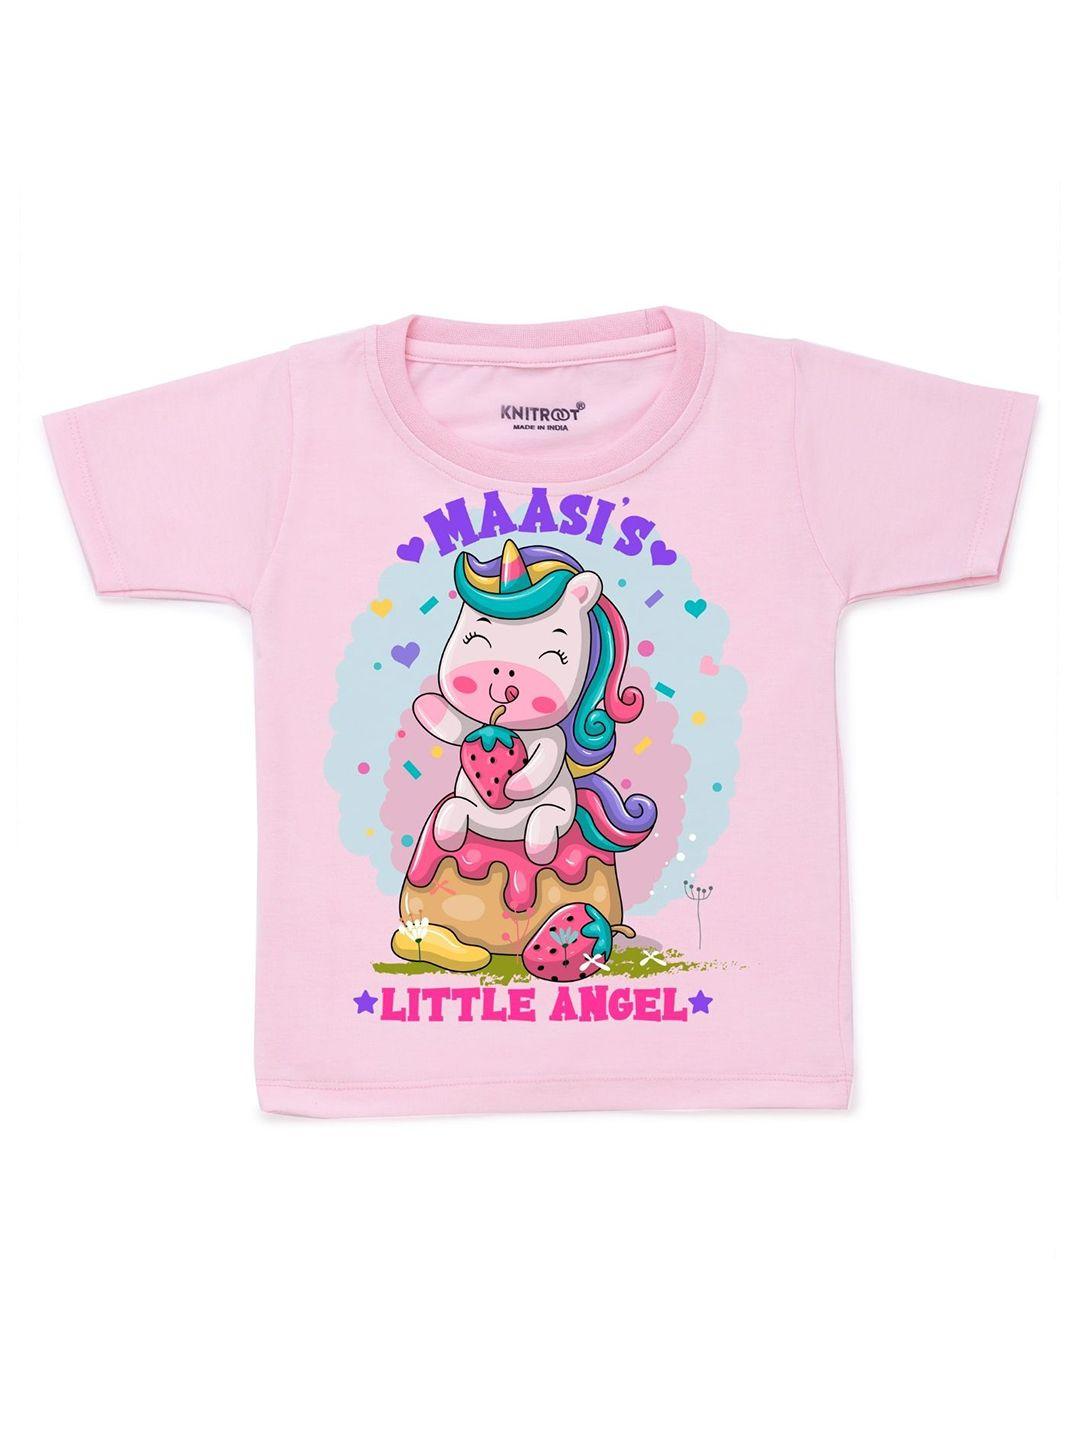 knitroot unisex kids pink printed t-shirt